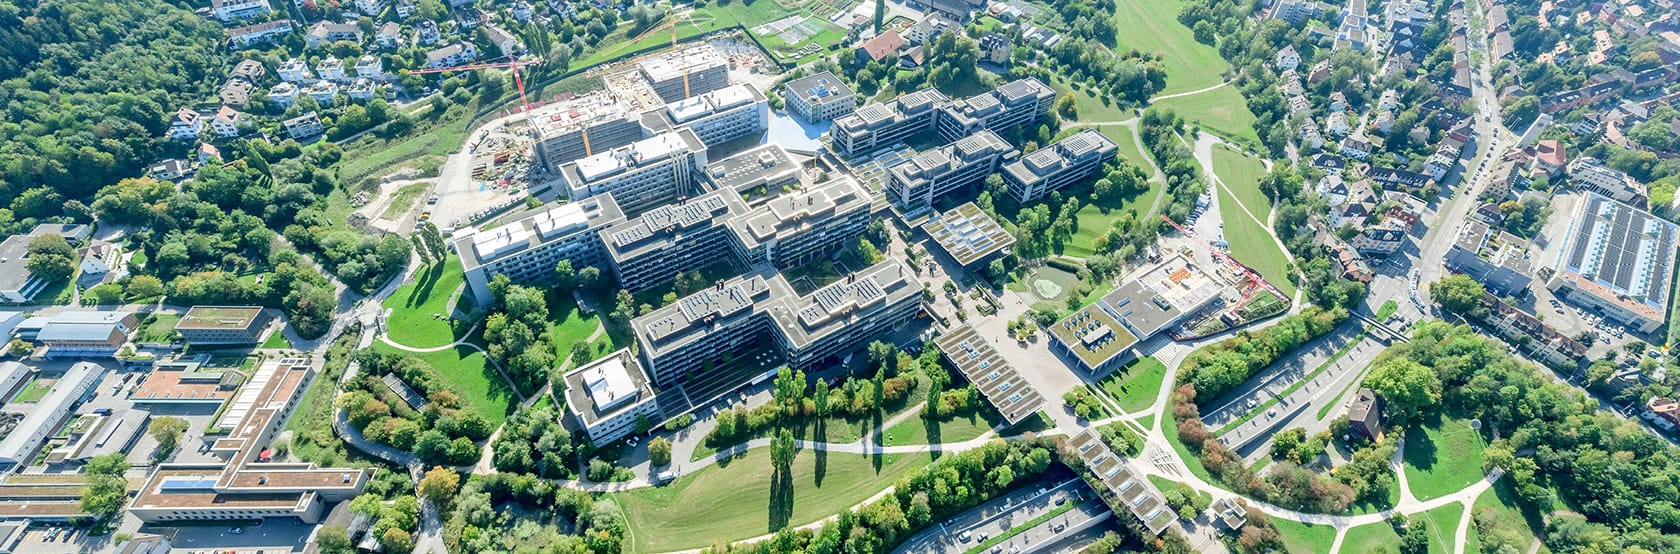 Vogelperspektive des Campus Irchel der Universität Zürich